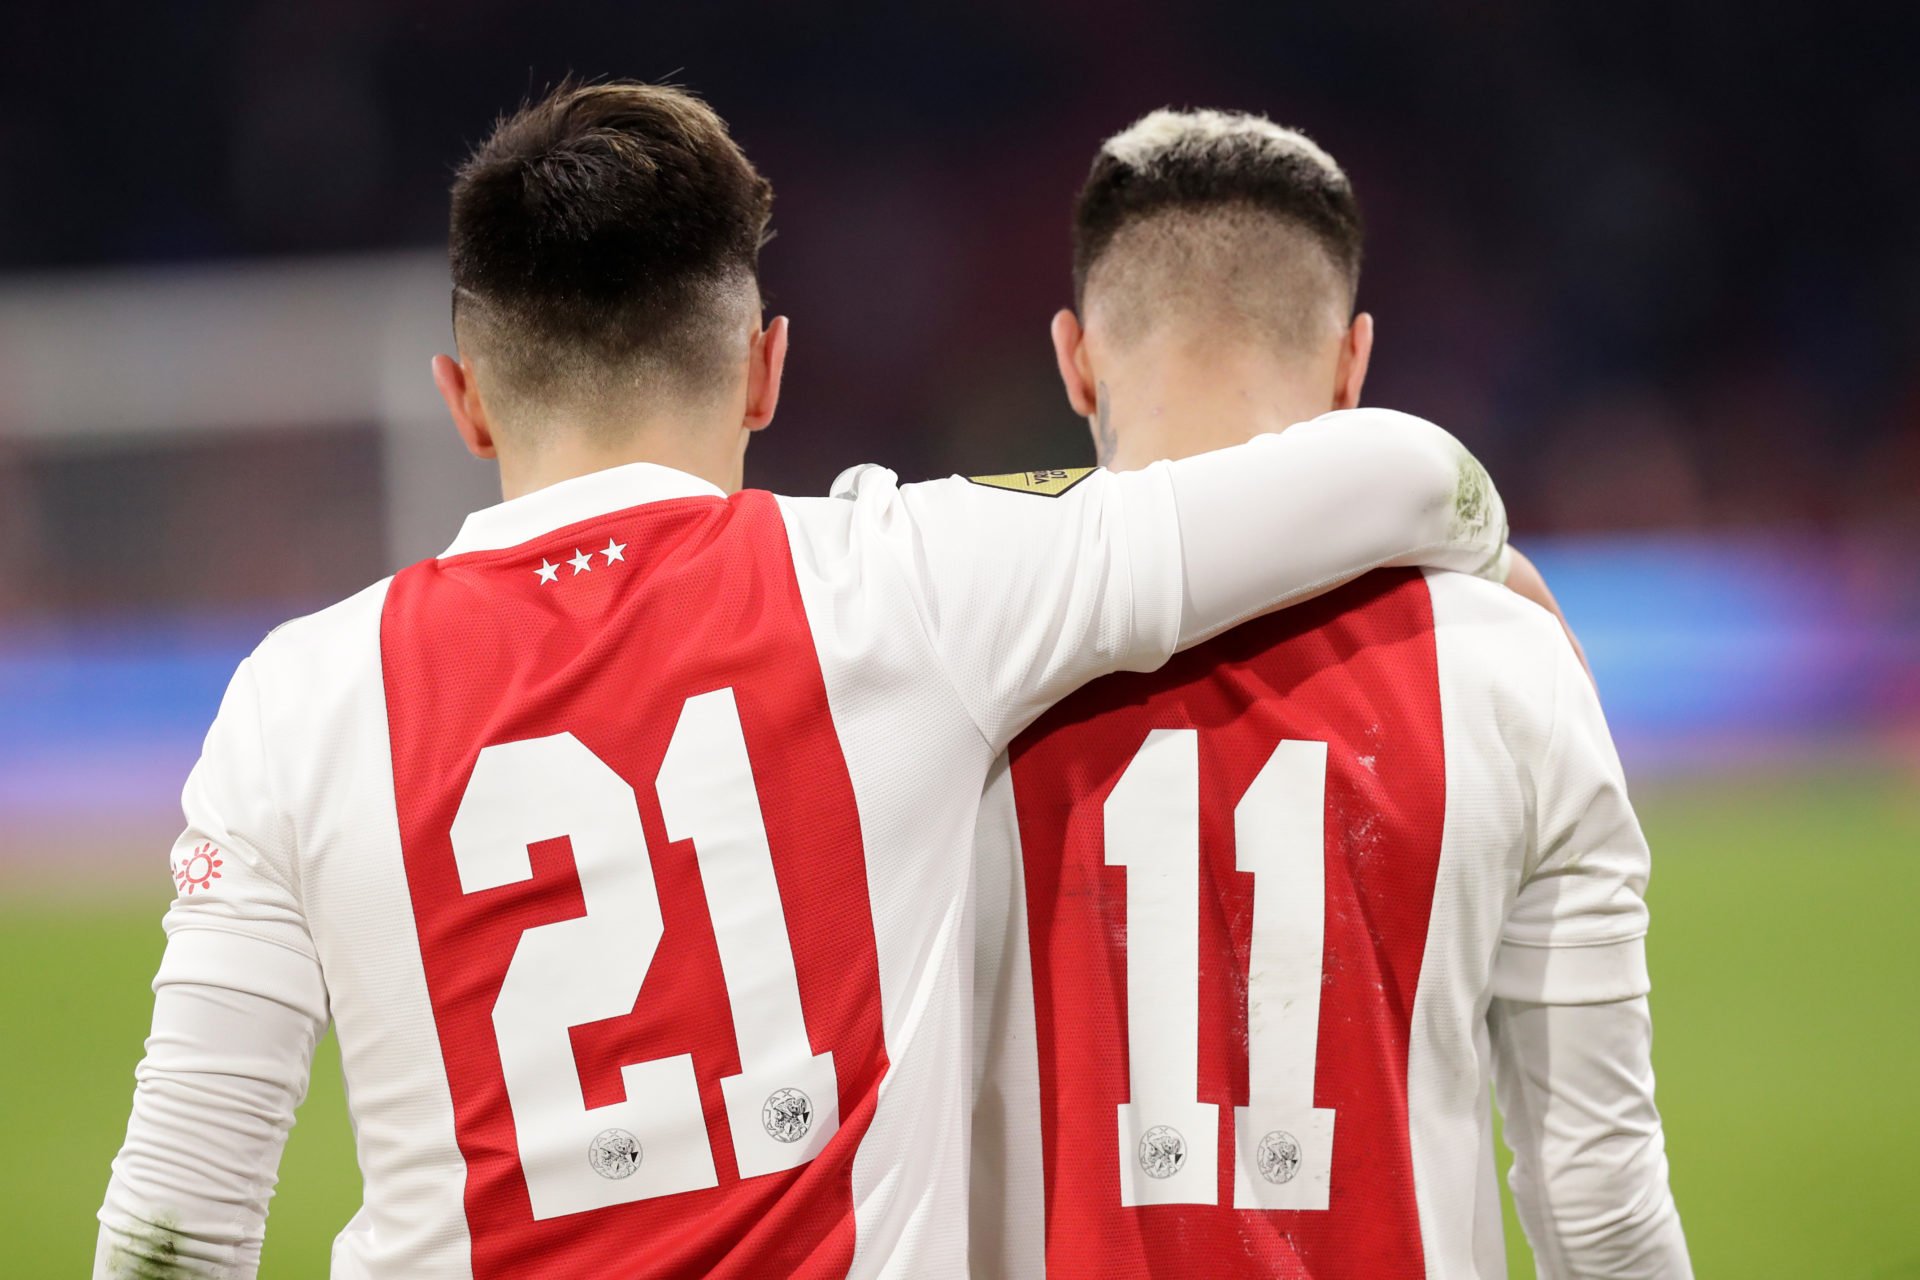 Ajax v RKC Waalwijk - Dutch Eredivisie